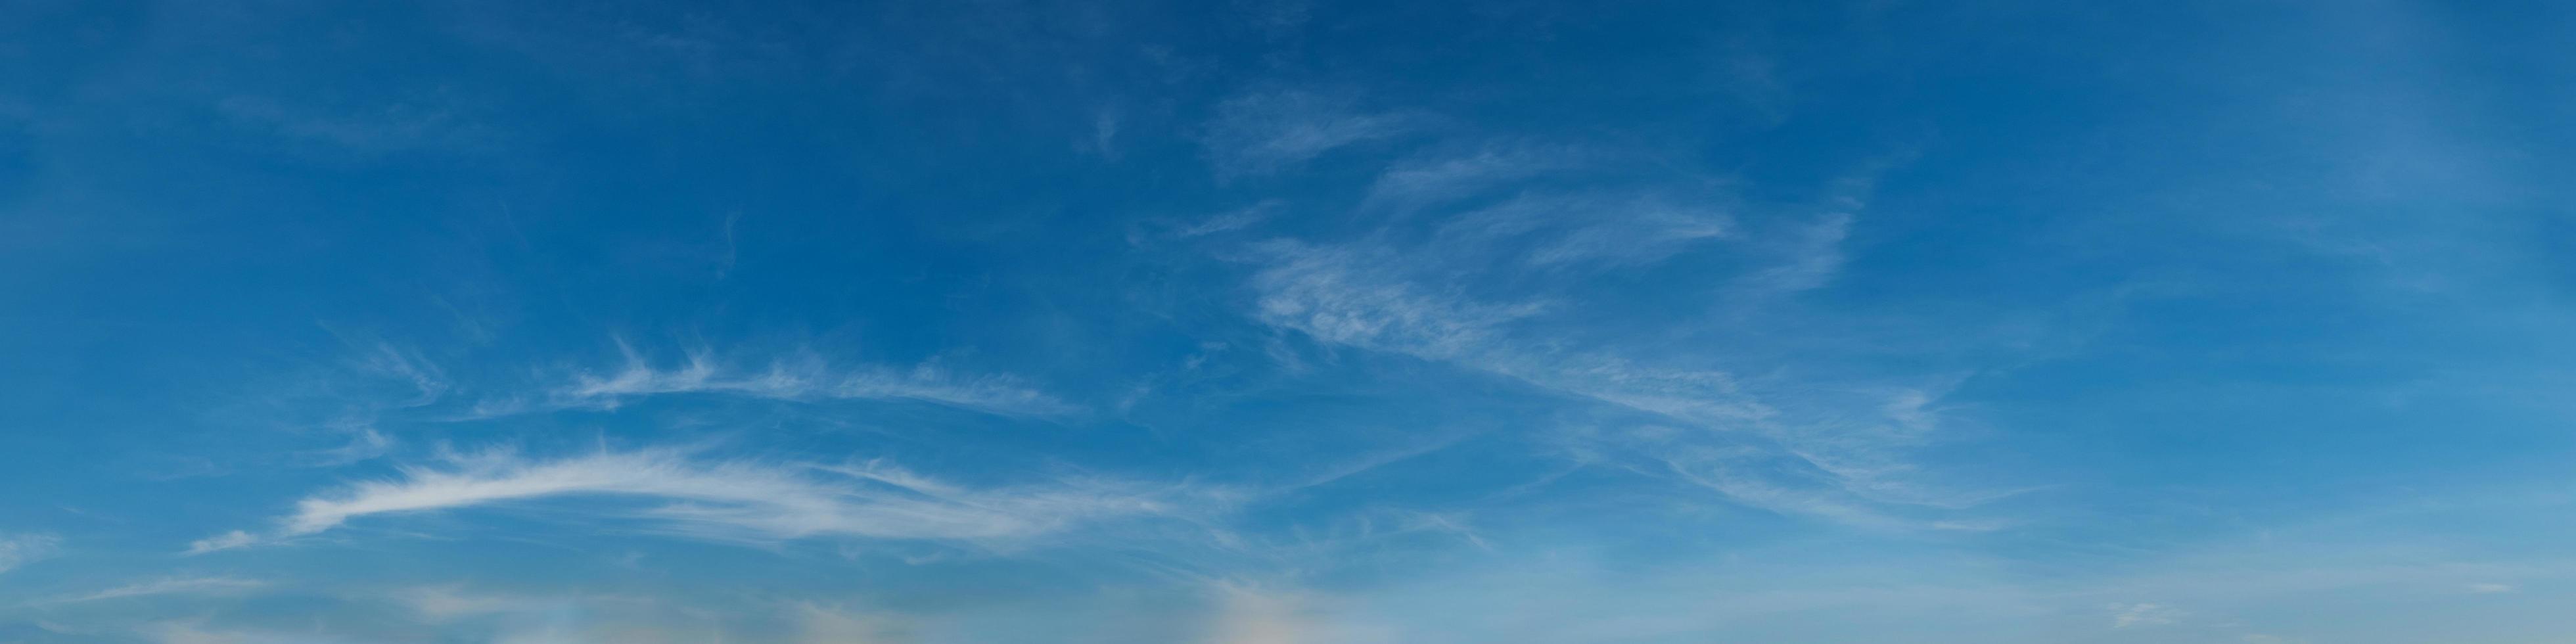 leuchtender Farbpanoramahimmel mit Wolke an einem sonnigen Tag. foto